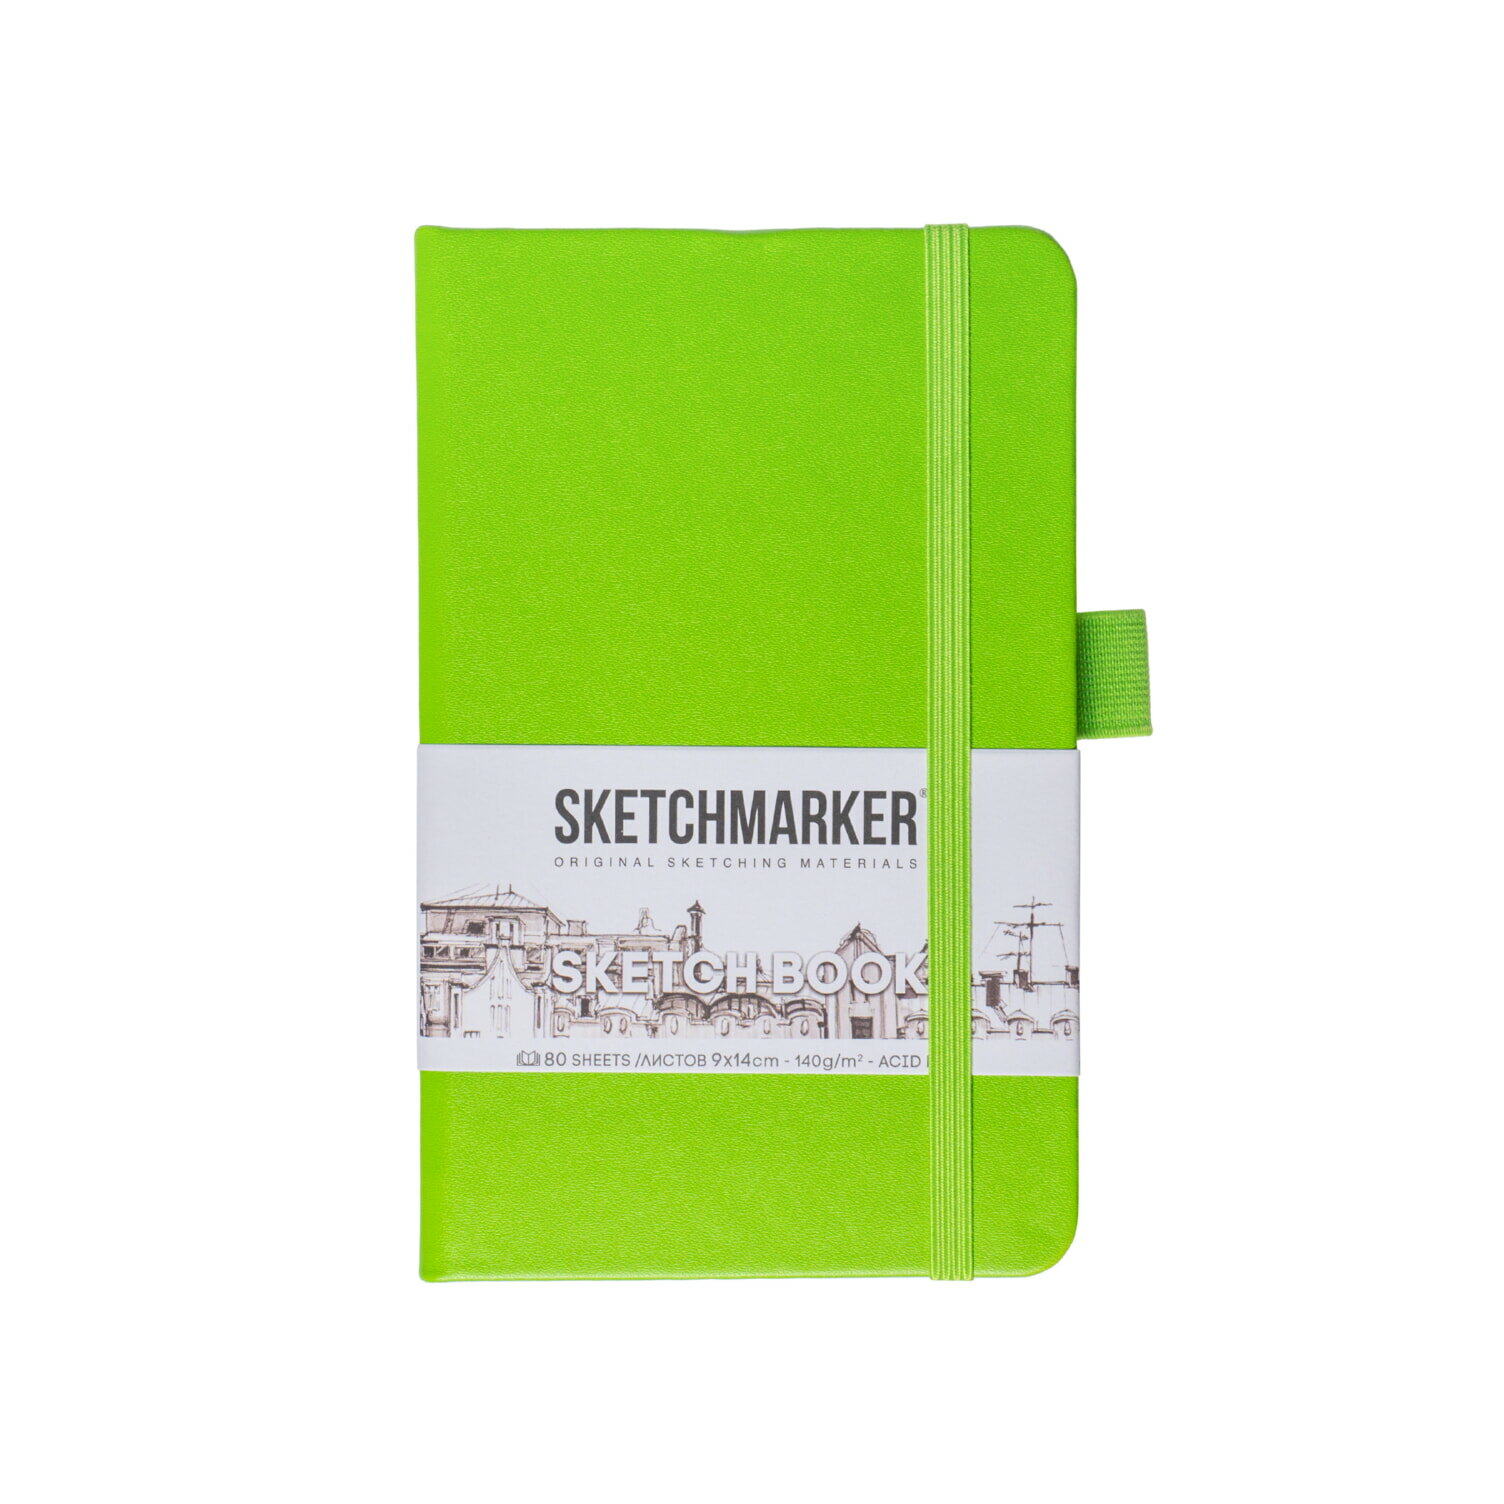 Скетчбук для рисования, блокнот для скетчинга SKETCHMARKER Sketchmarker 140г/кв. м 9*14см 80л твердая обложка, цвет Зеленый луг